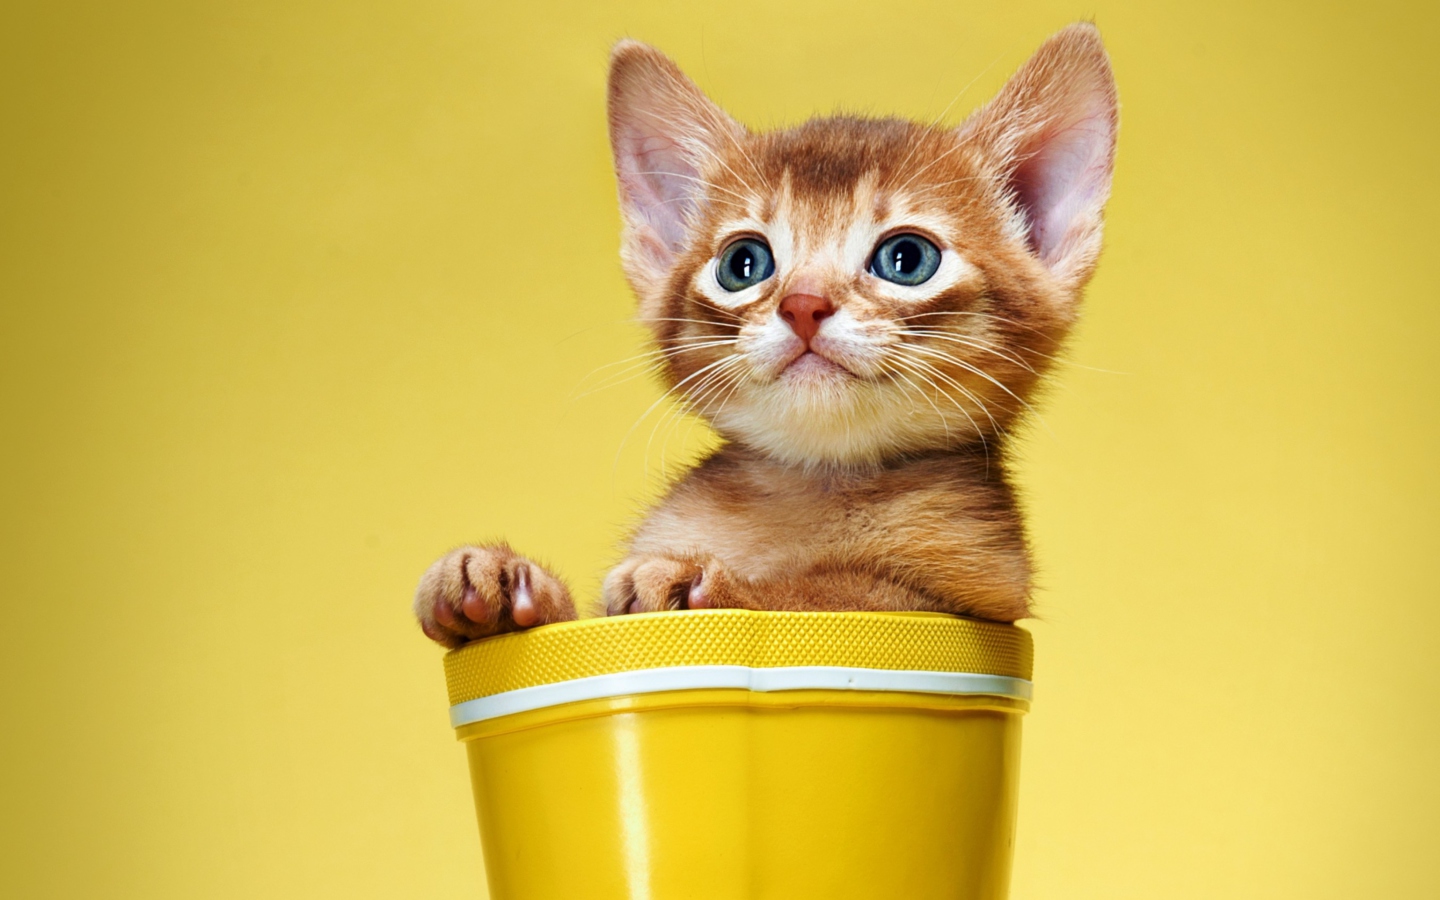 Little Kitten In Yellow Cup wallpaper 1440x900